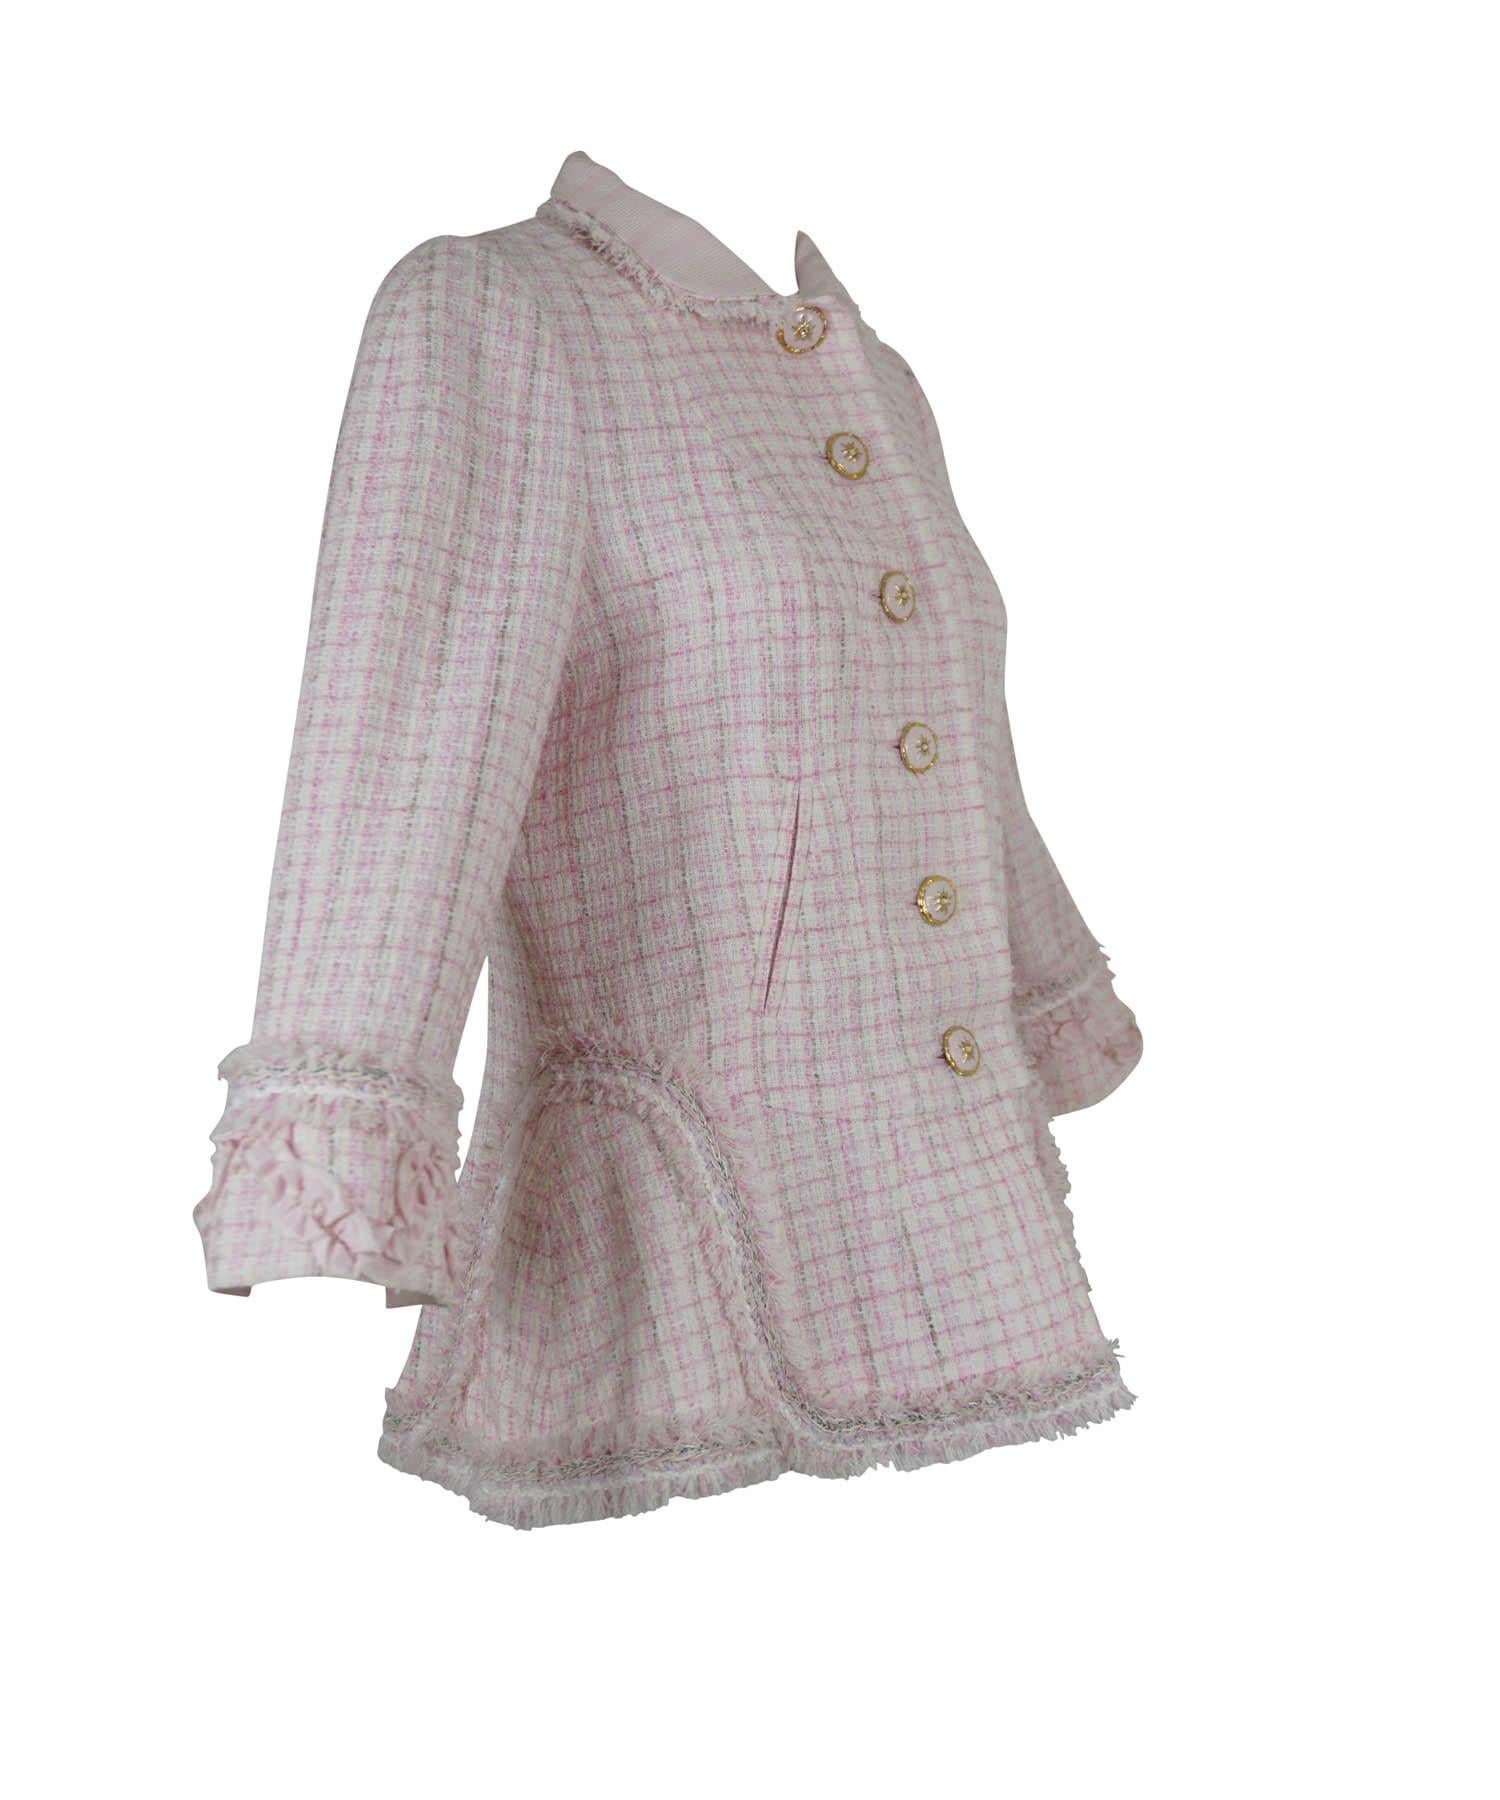 Chanel rosa, weiß, beige Tweed-Blazer mit Knopfleiste. Mit kristallgoldenen Emaille-Sternschnuppen-Knöpfen, Zierbändern und Fransenbesatz sowie einer Kette am Innensaum. Designer Größe 42/ 8-10. Hergestellt in Frankreich.